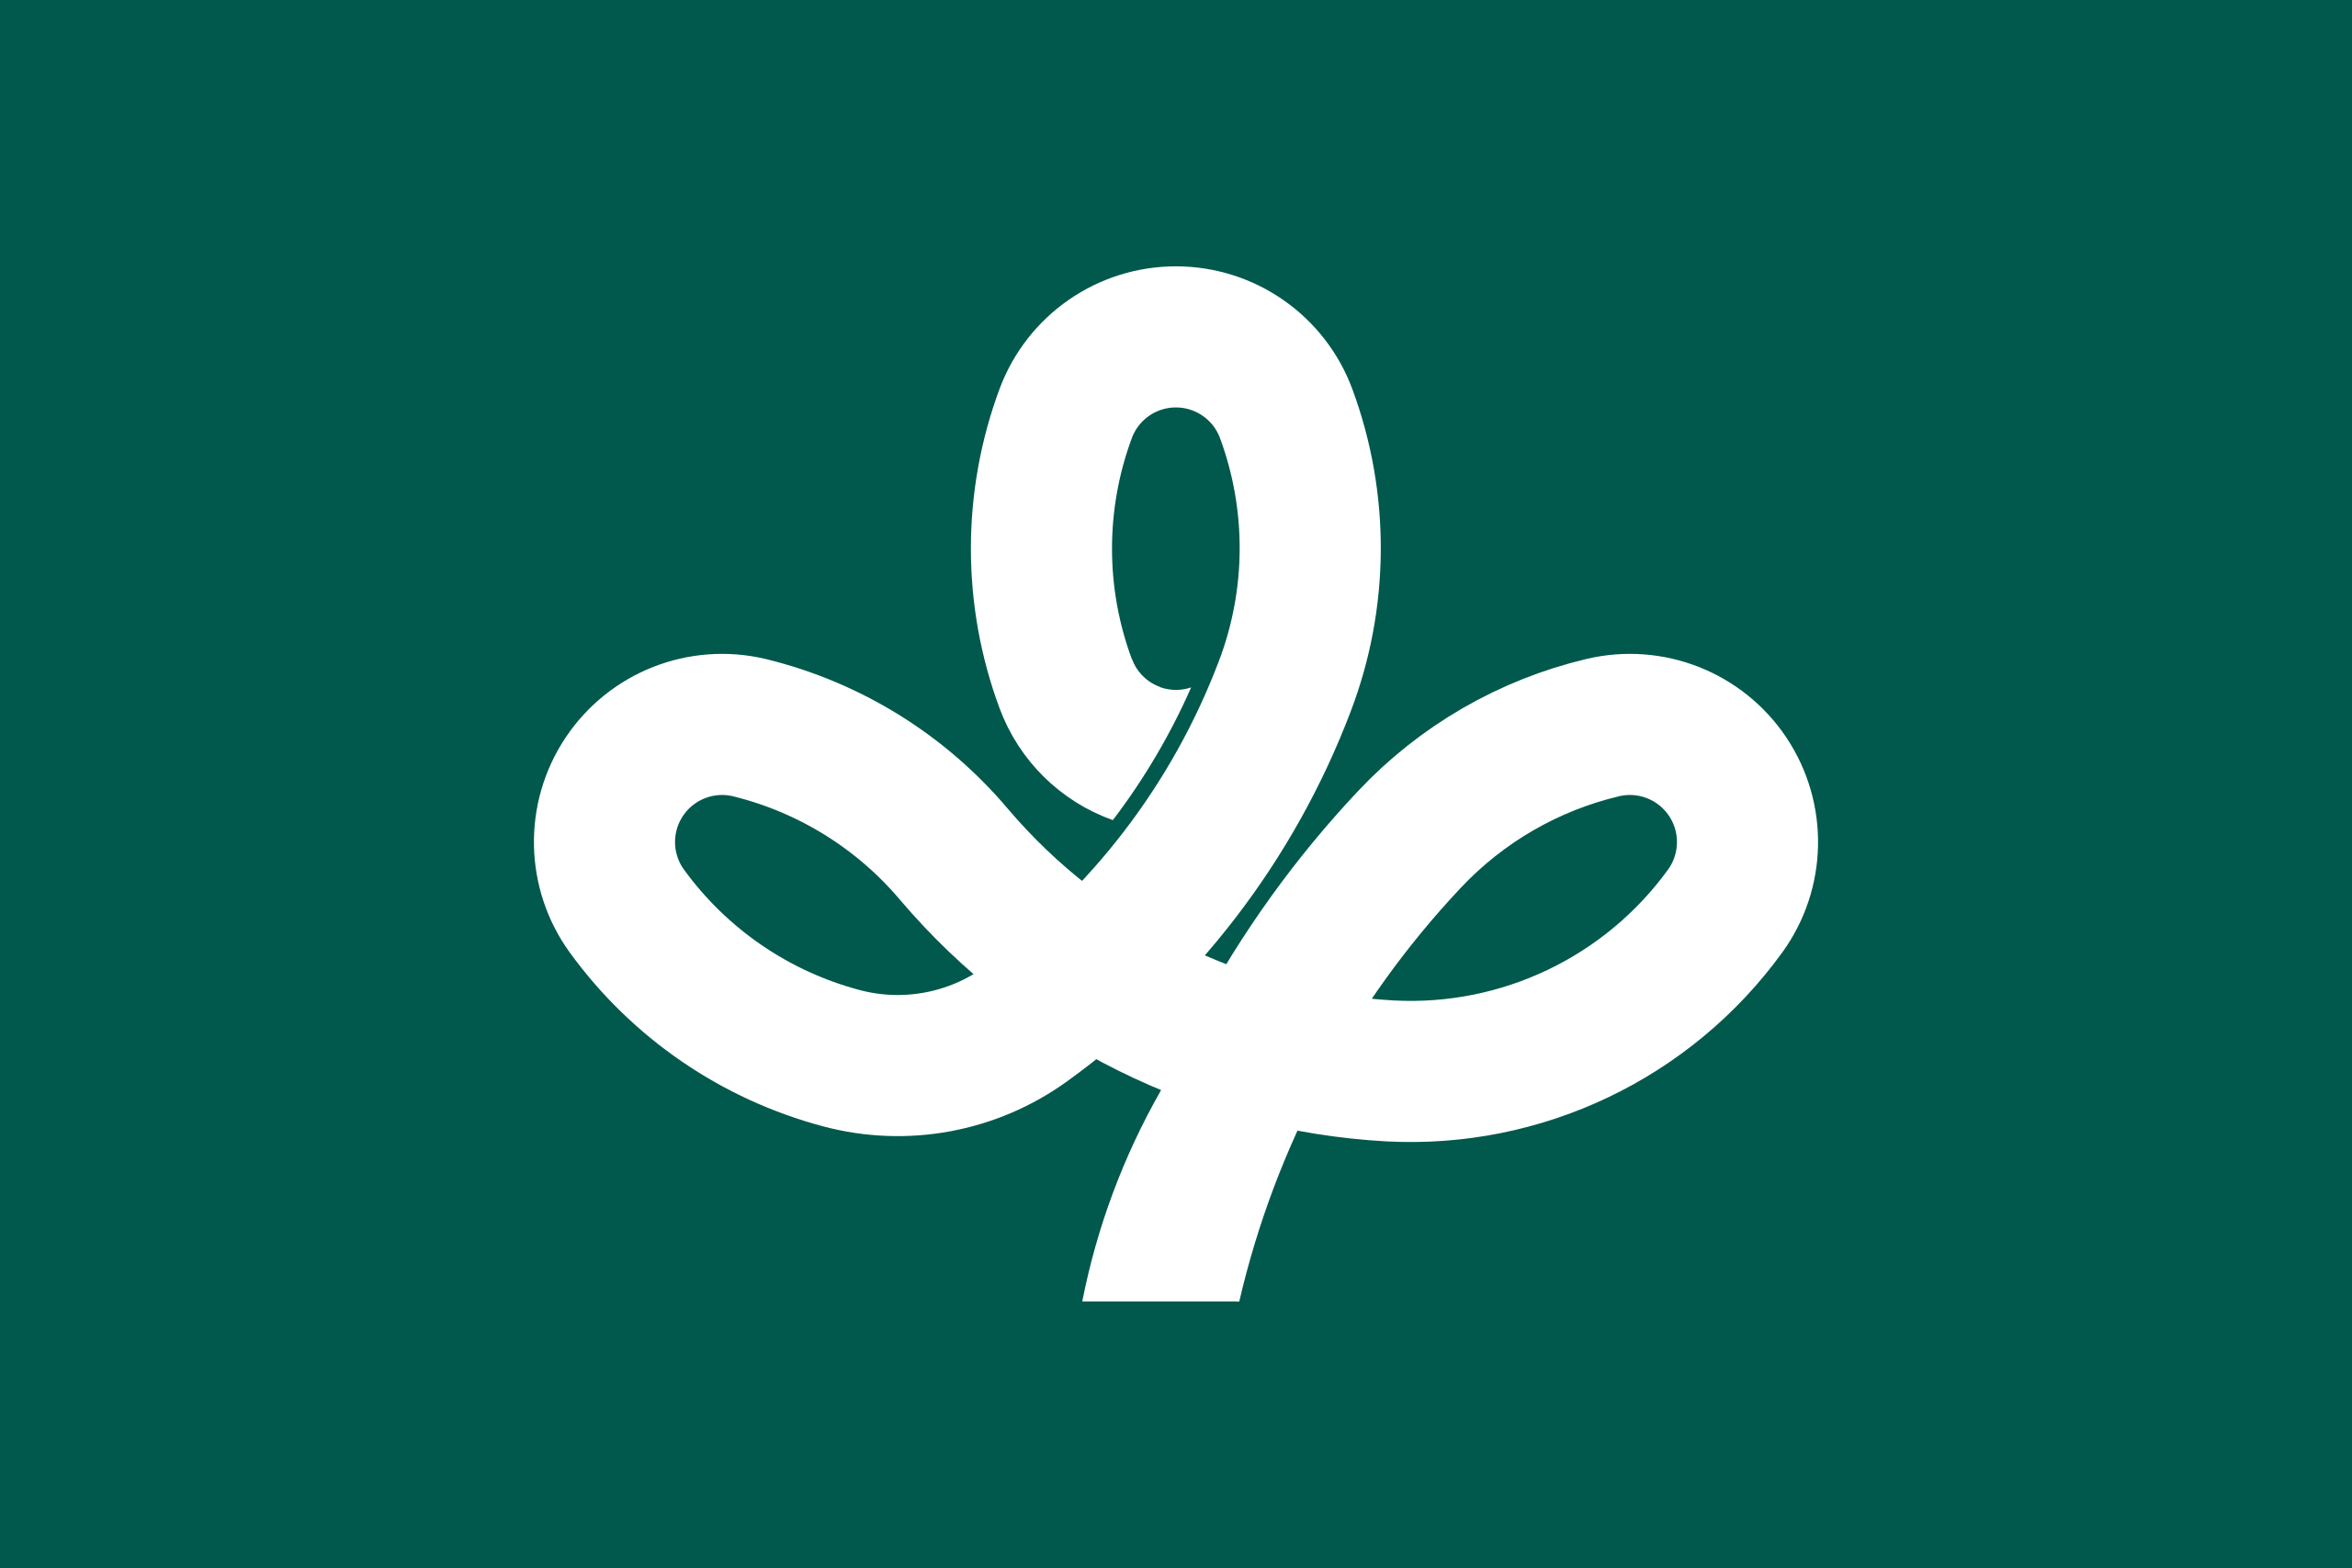 miyagi flag